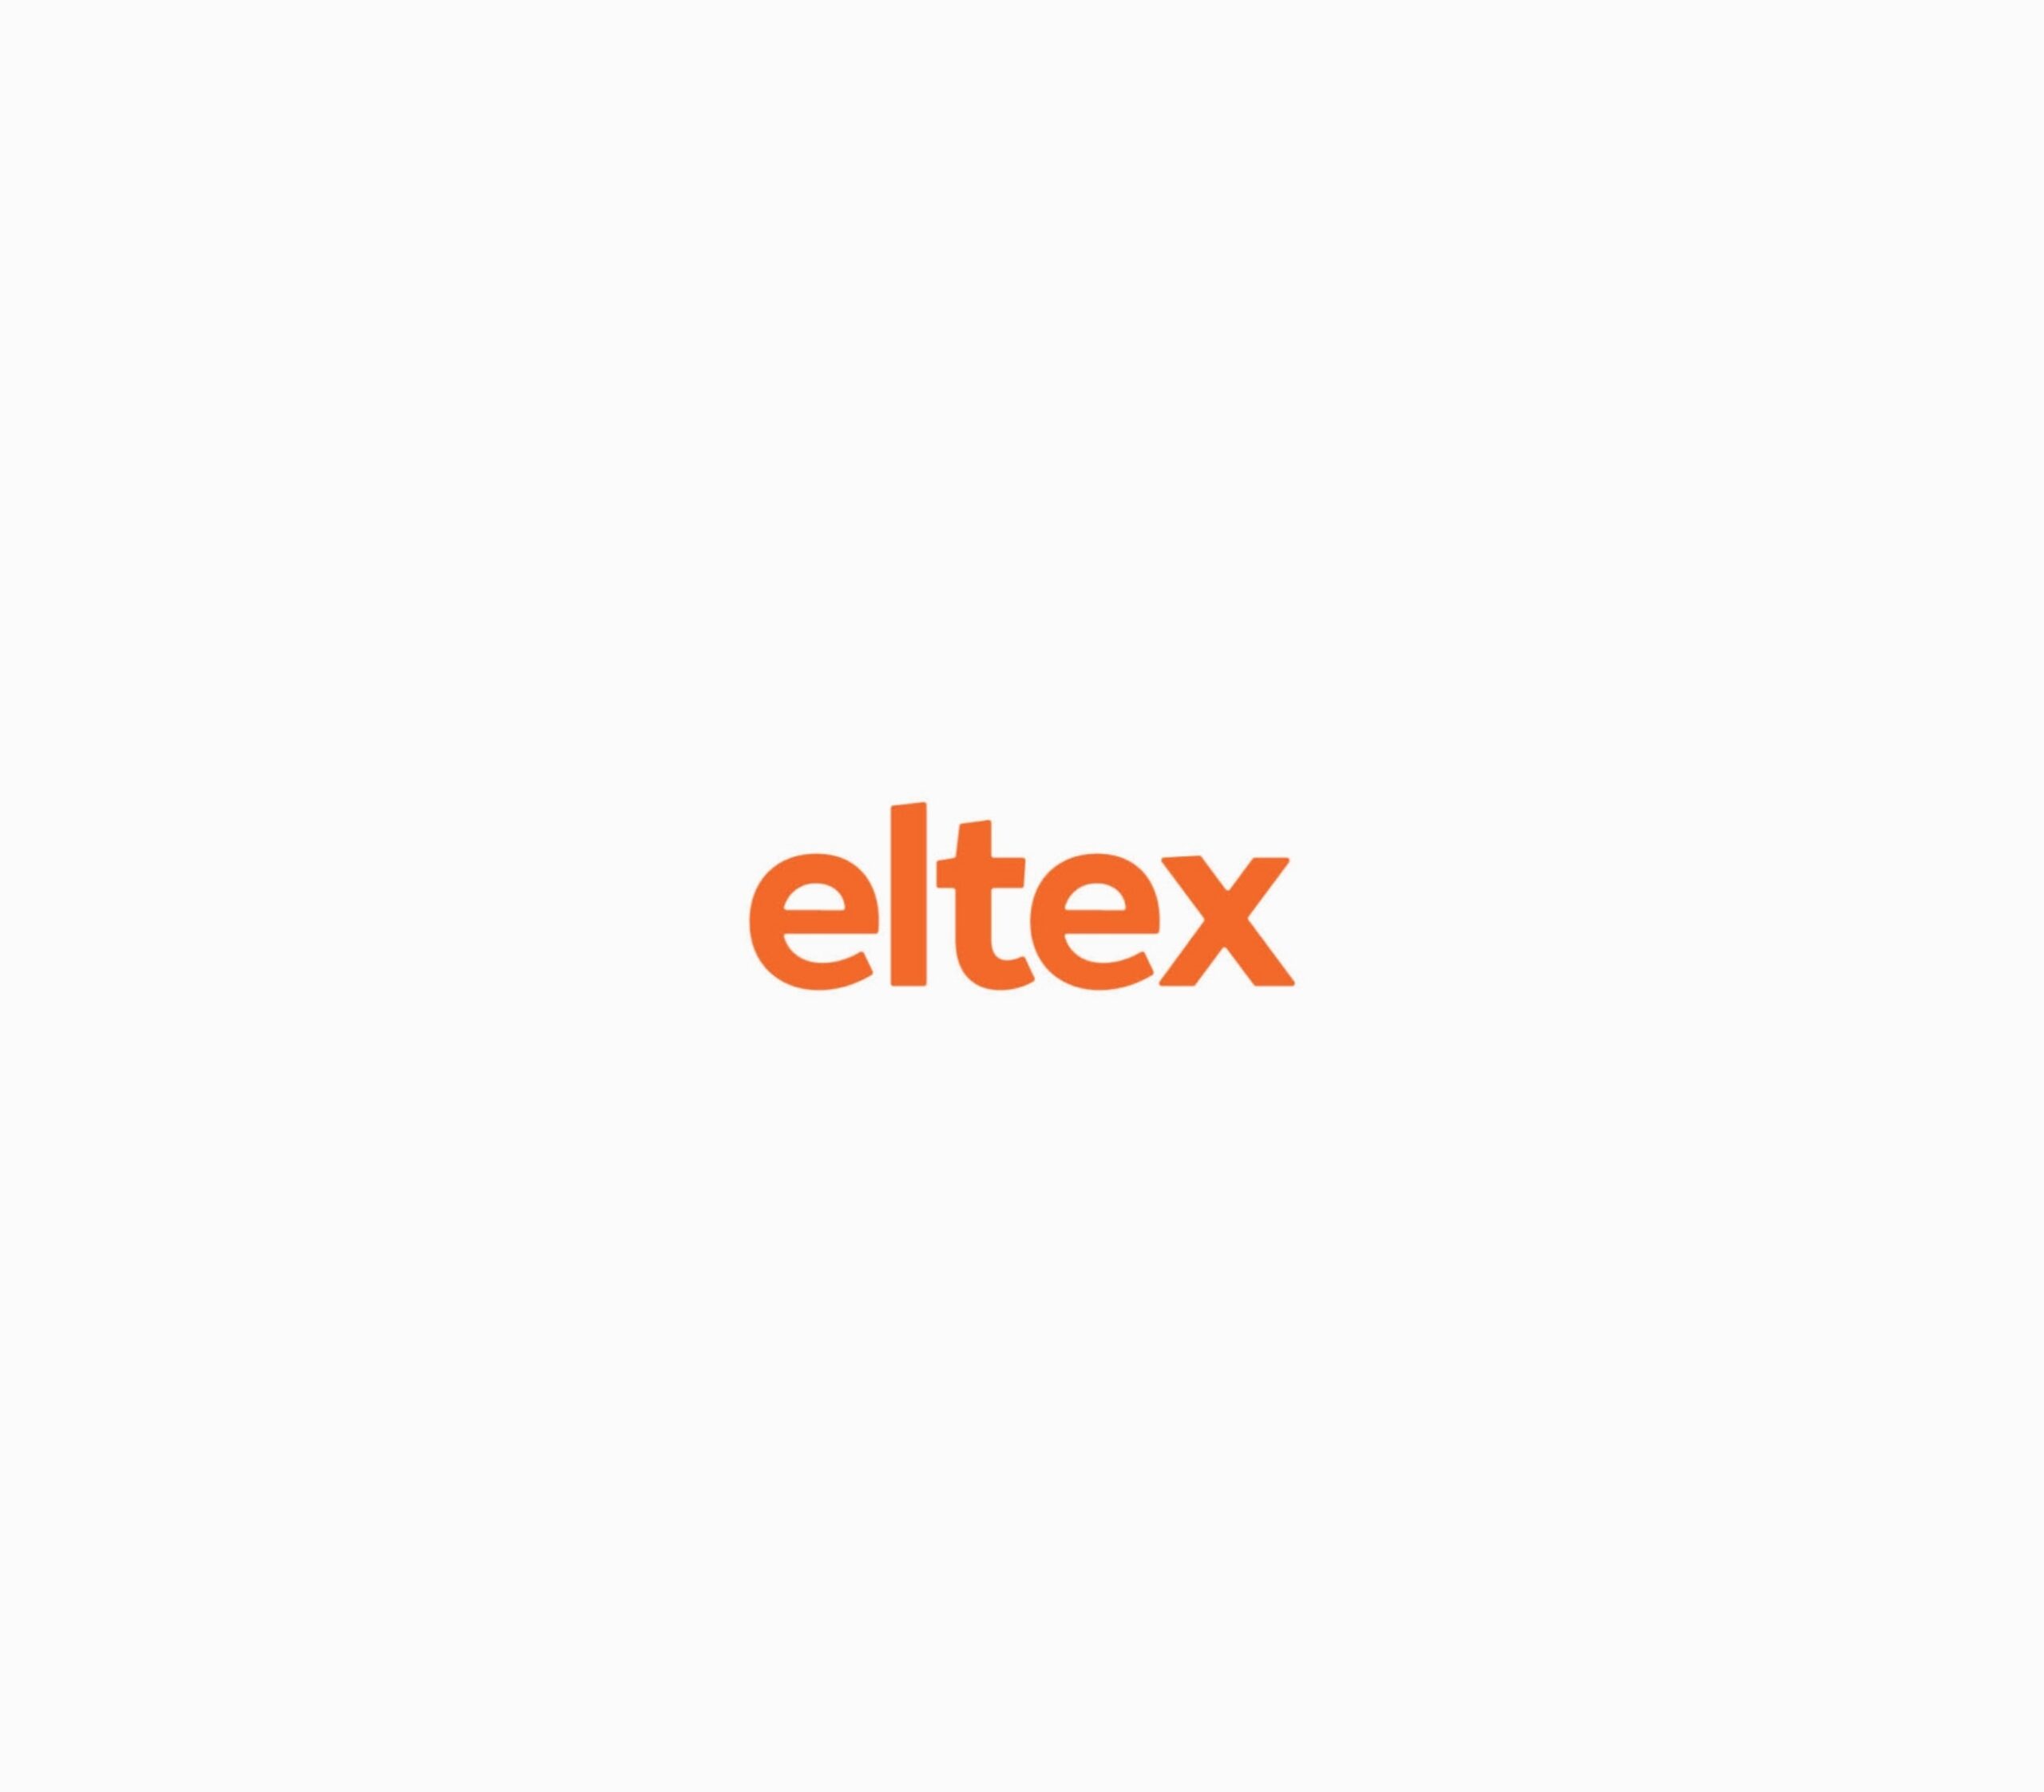 ELTEX Concept WEB 01 0 1804x0